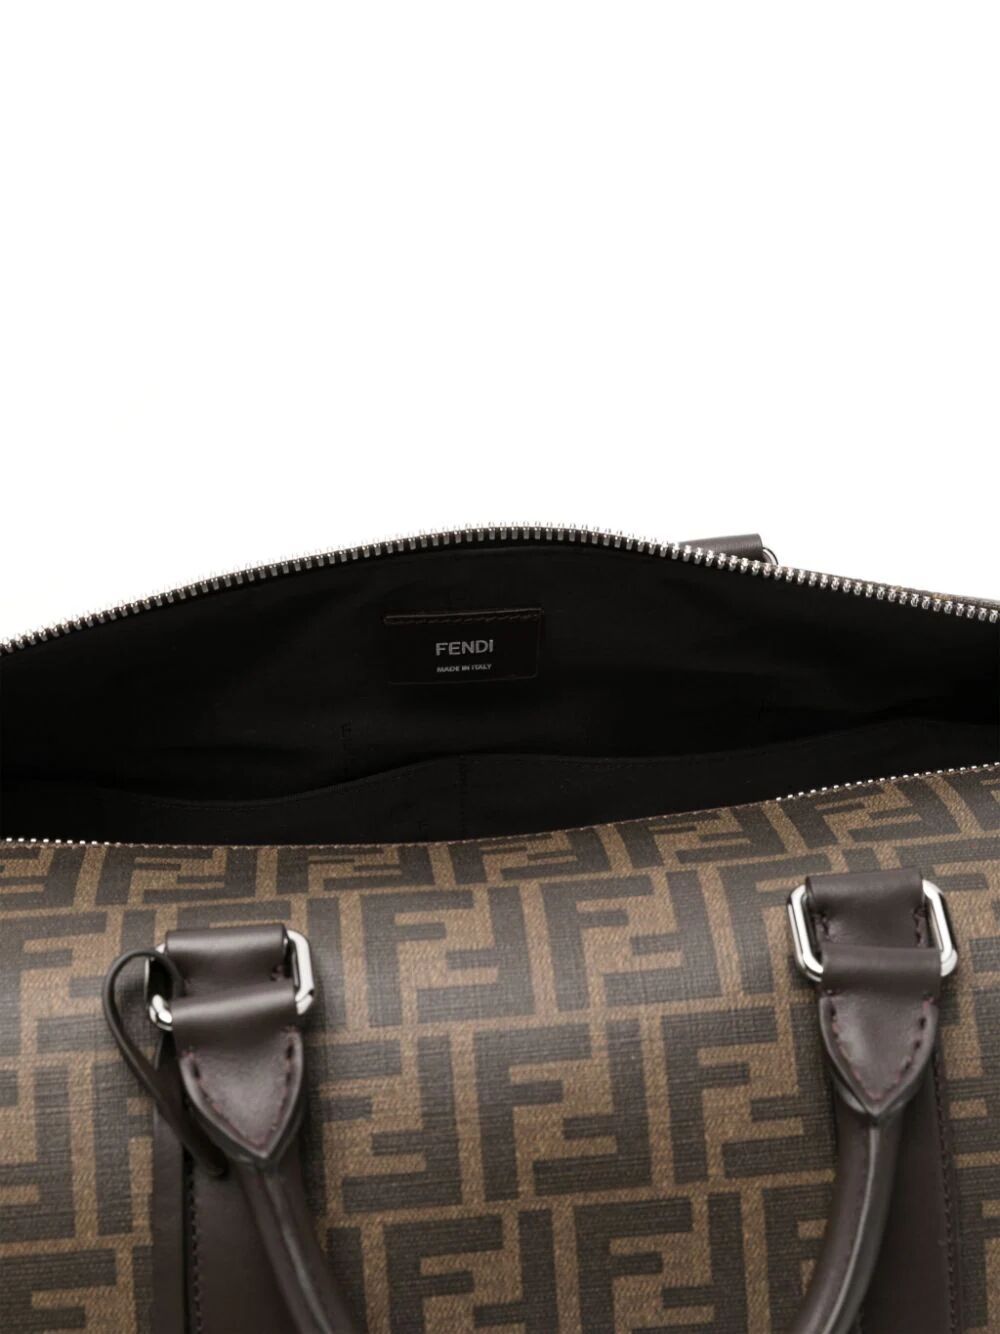 Shop Fendi Brown Ff Patterned Men's Travel Handbag With Leather Trim And Adjustable Strap